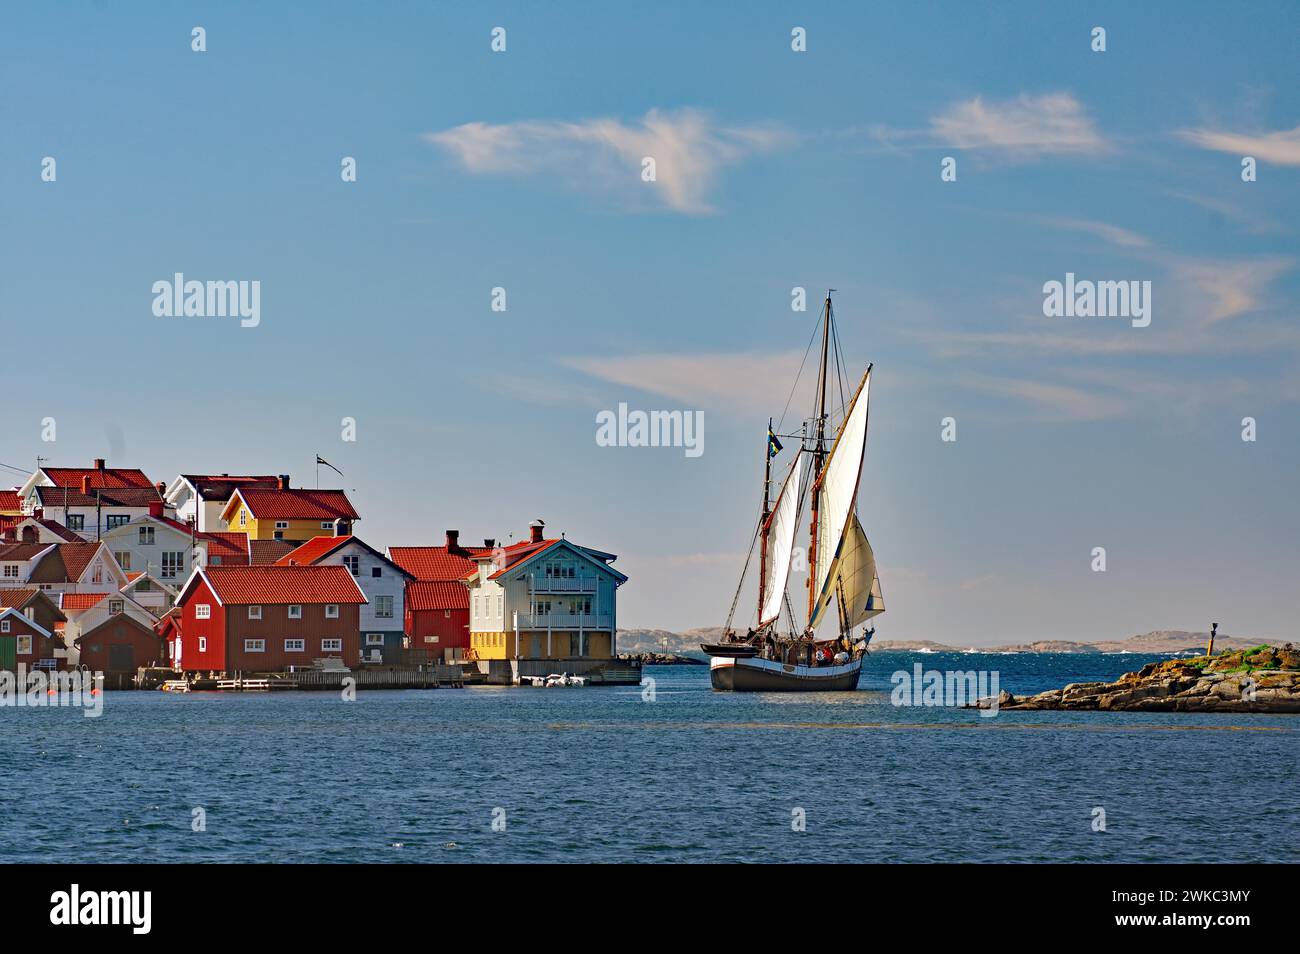 Nave a vela che lascia un piccolo porto sulla costa occidentale svedese, case di legno, Kaeringon, Svezia Foto Stock